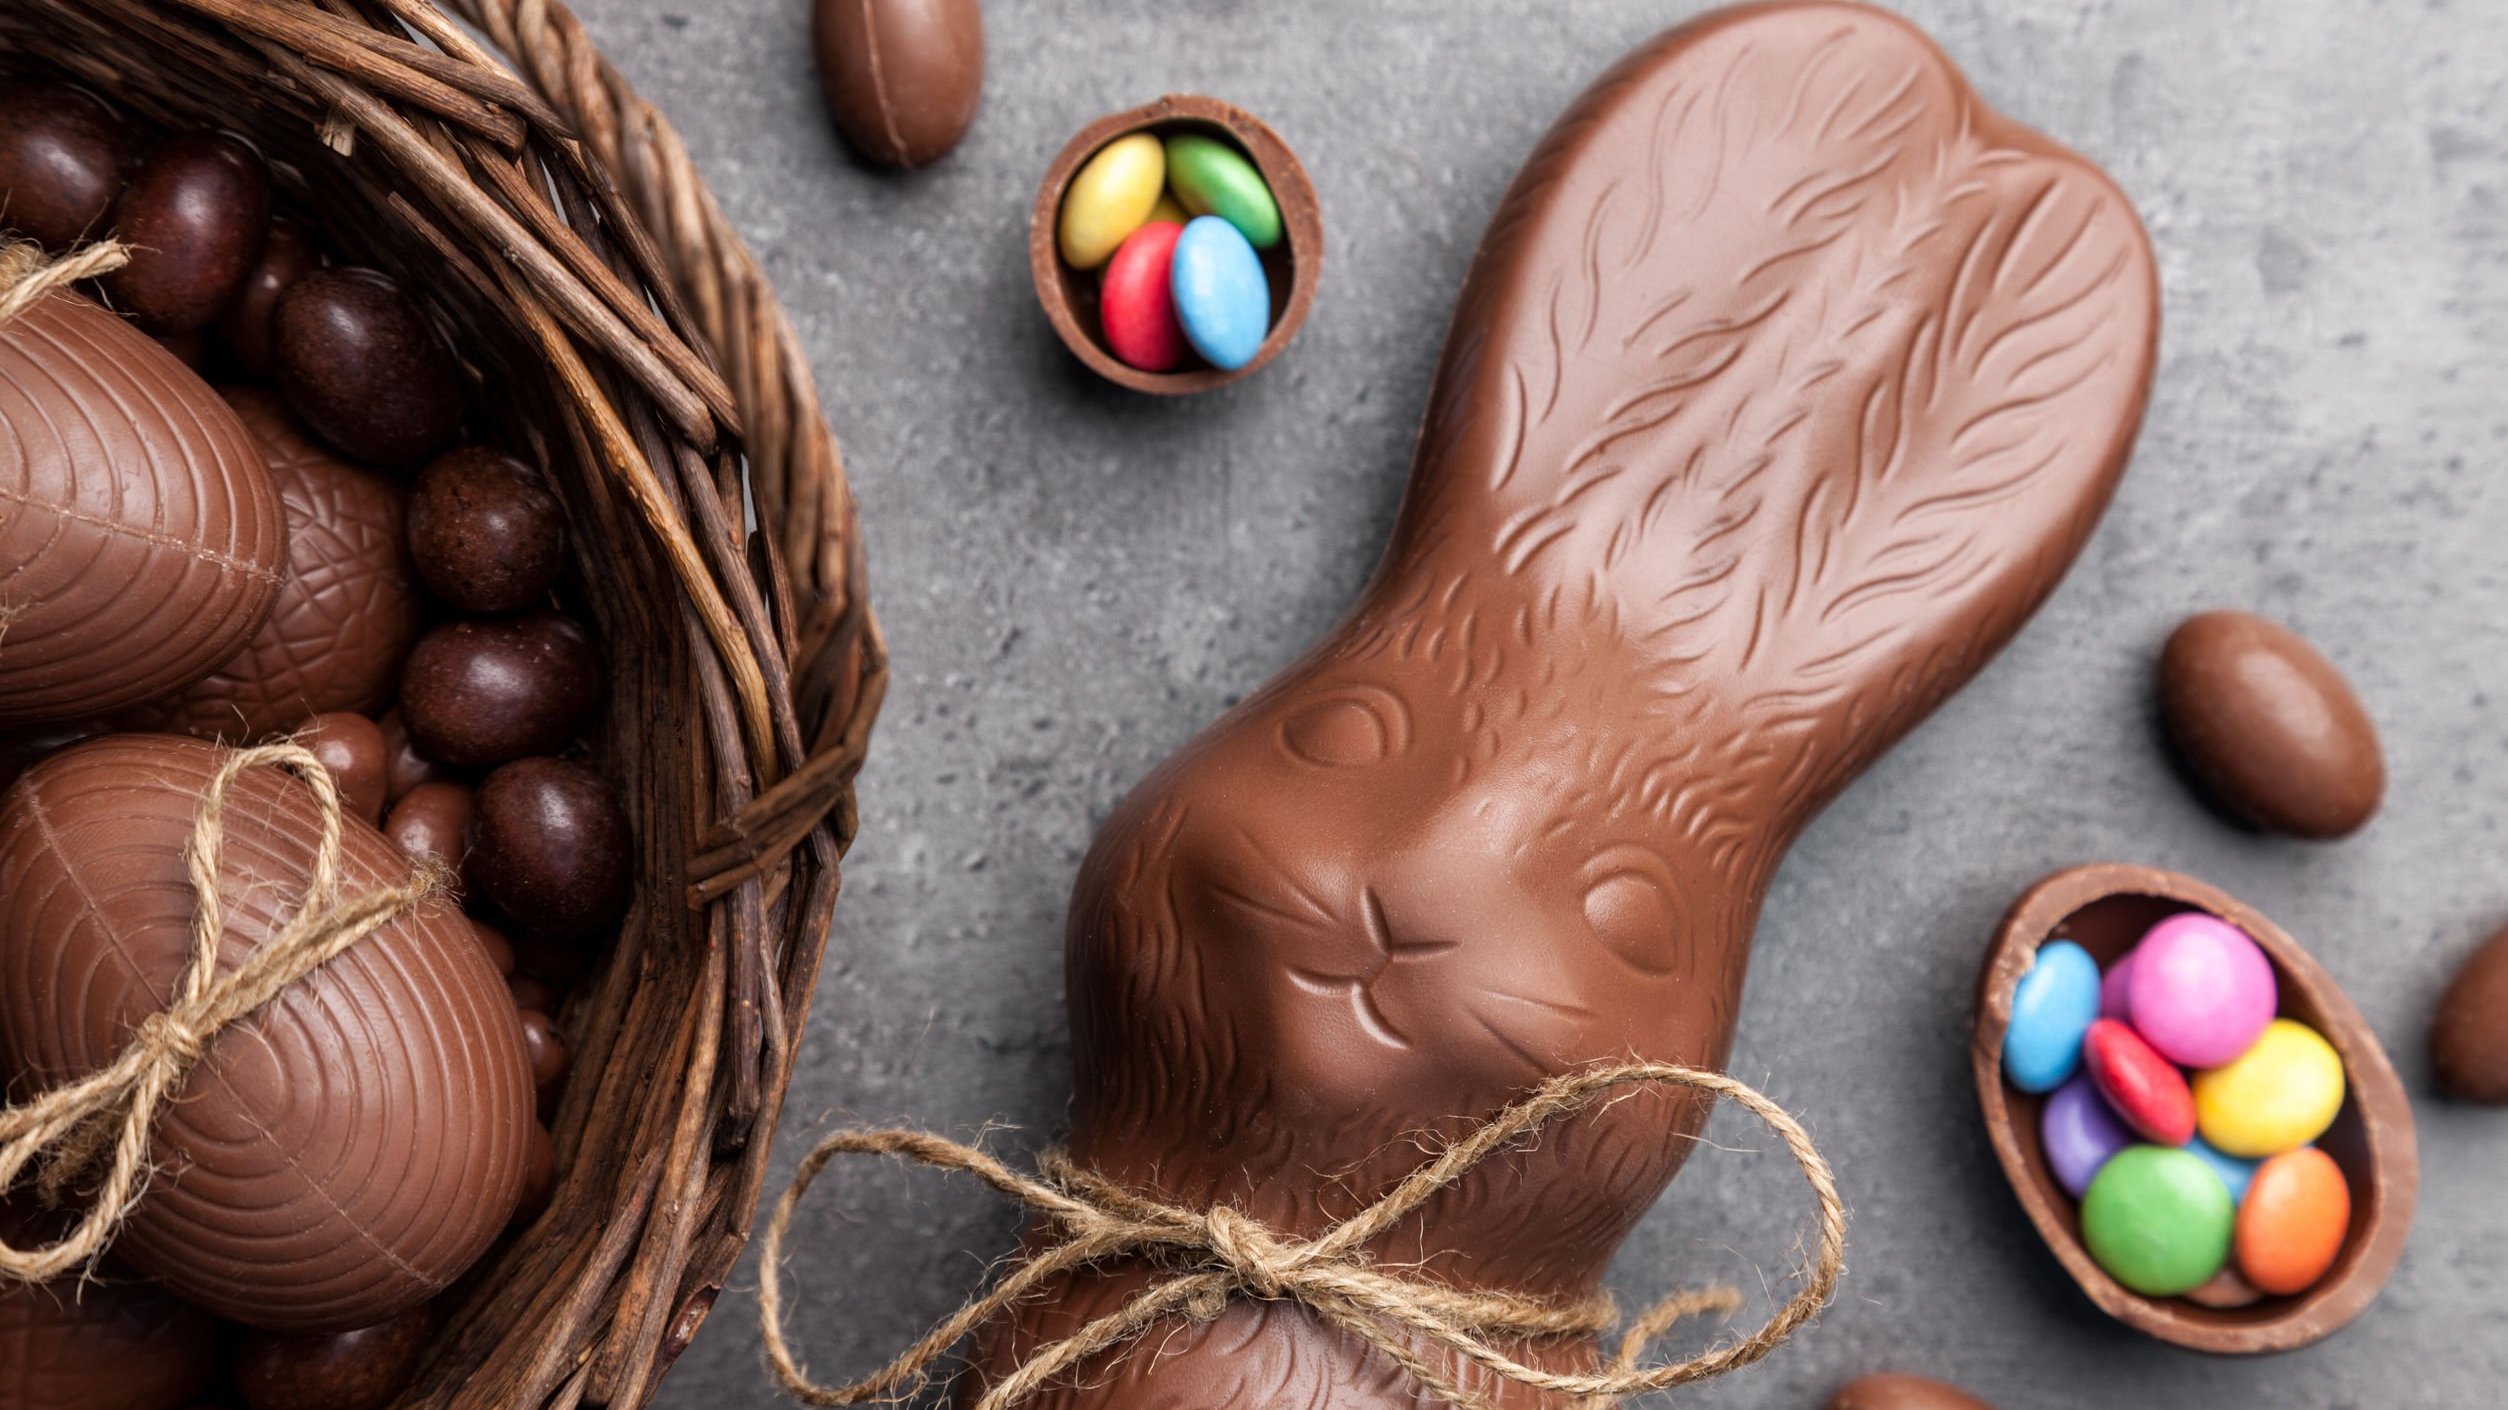 Ovos de chocolate recheados com doces coloridos, e um coelho de chocolate.